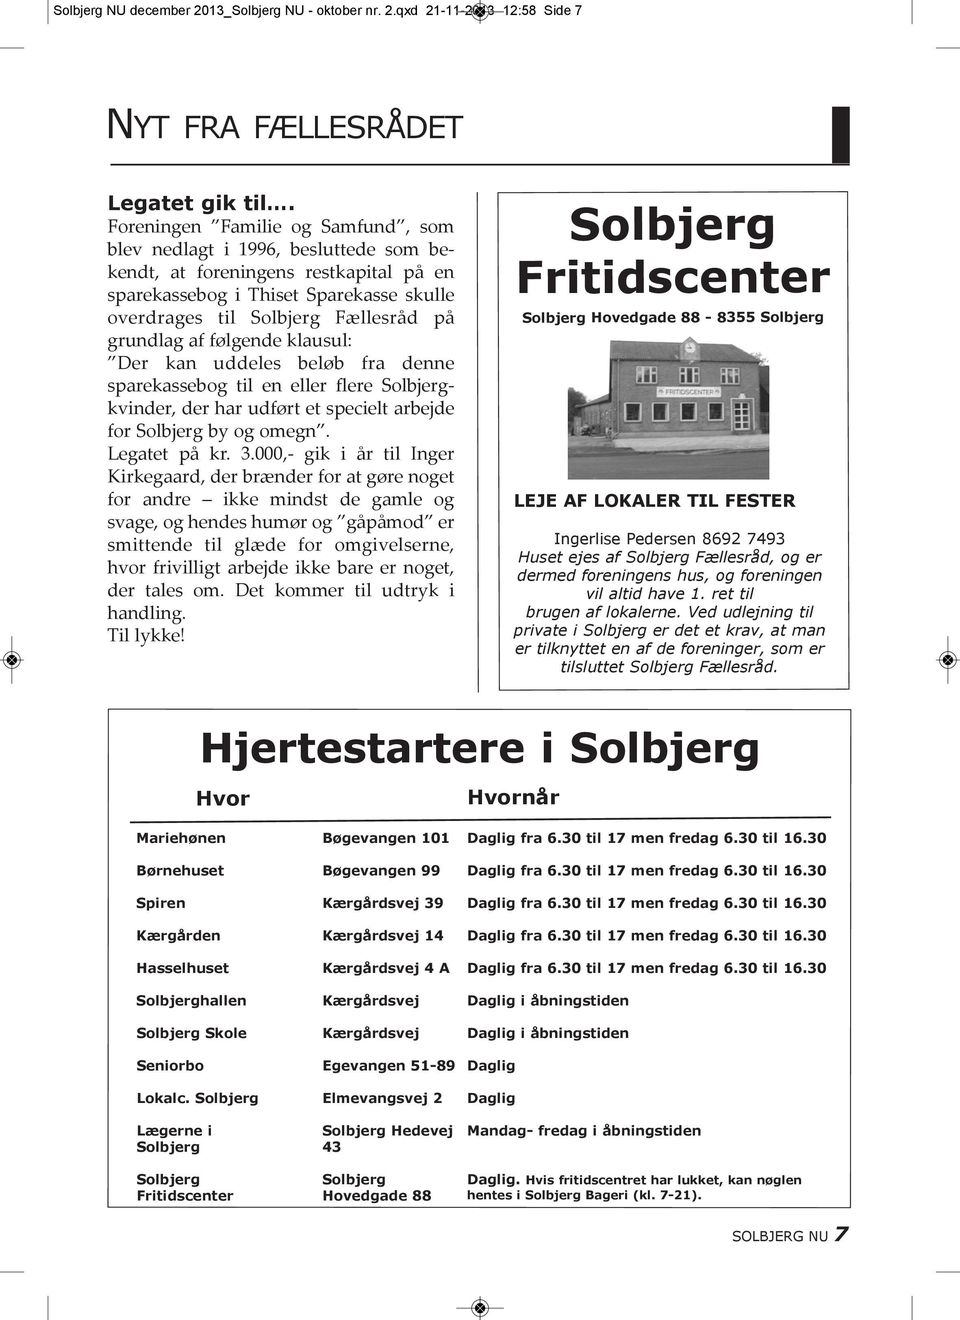 af følgende klausul: Der kan uddeles beløb fra denne sparekassebog til en eller flere Solbjergkvinder, der har udført et specielt arbejde for Solbjerg by og omegn. Legatet på kr. 3.